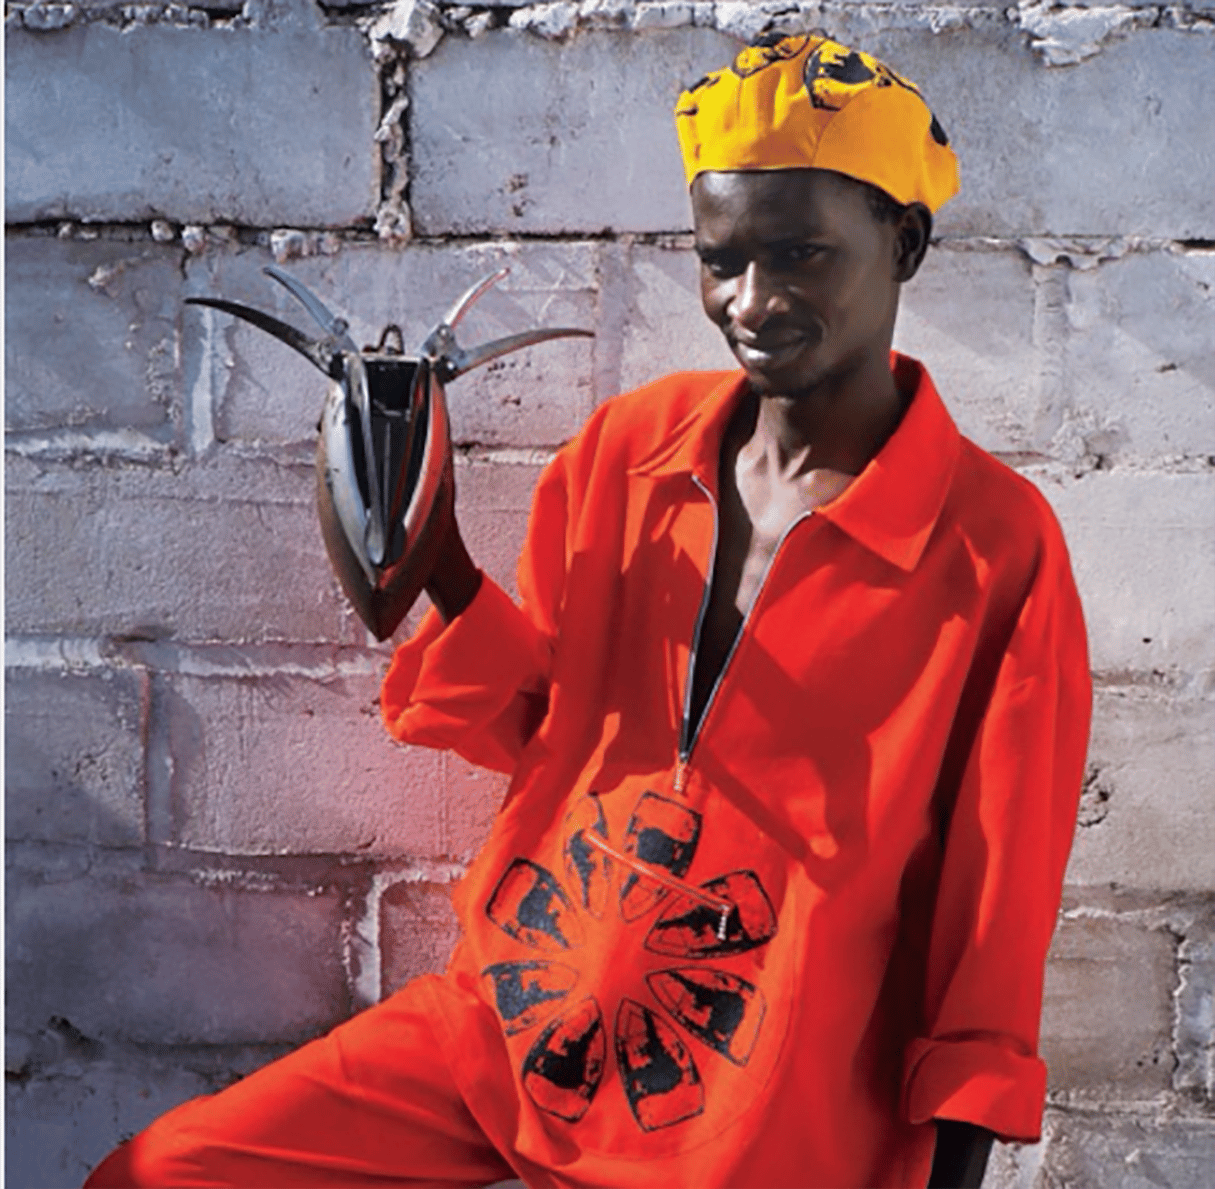 L’œuvre du sculpteur sénégalais Ndary Lo fait l’objet d’une exposition, « Trans-fer », à la Fondation Blachère (Apt, France) jusqu’en septembre 2020. © Ndary Lo
Francine Vormese-Matarasso